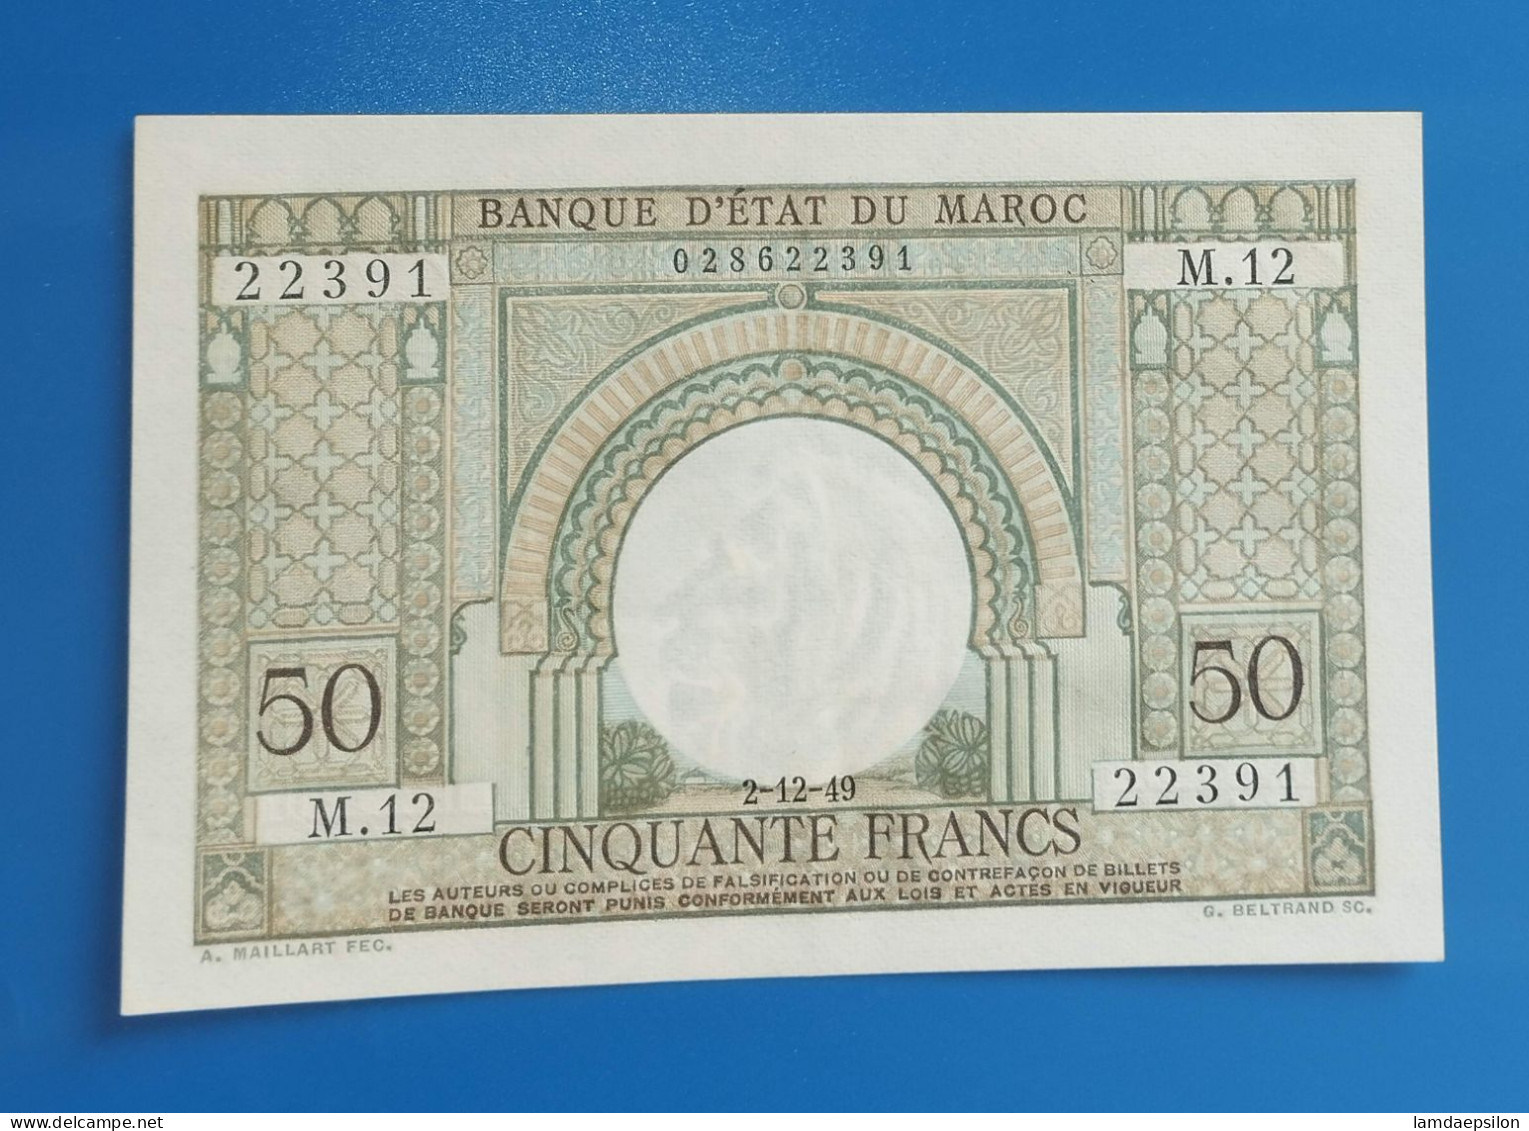 MAROC MOROCCO MARRUECOS MAROKKO BANQUE D'ETAT 50 FRANC 1949 AUNC - Morocco